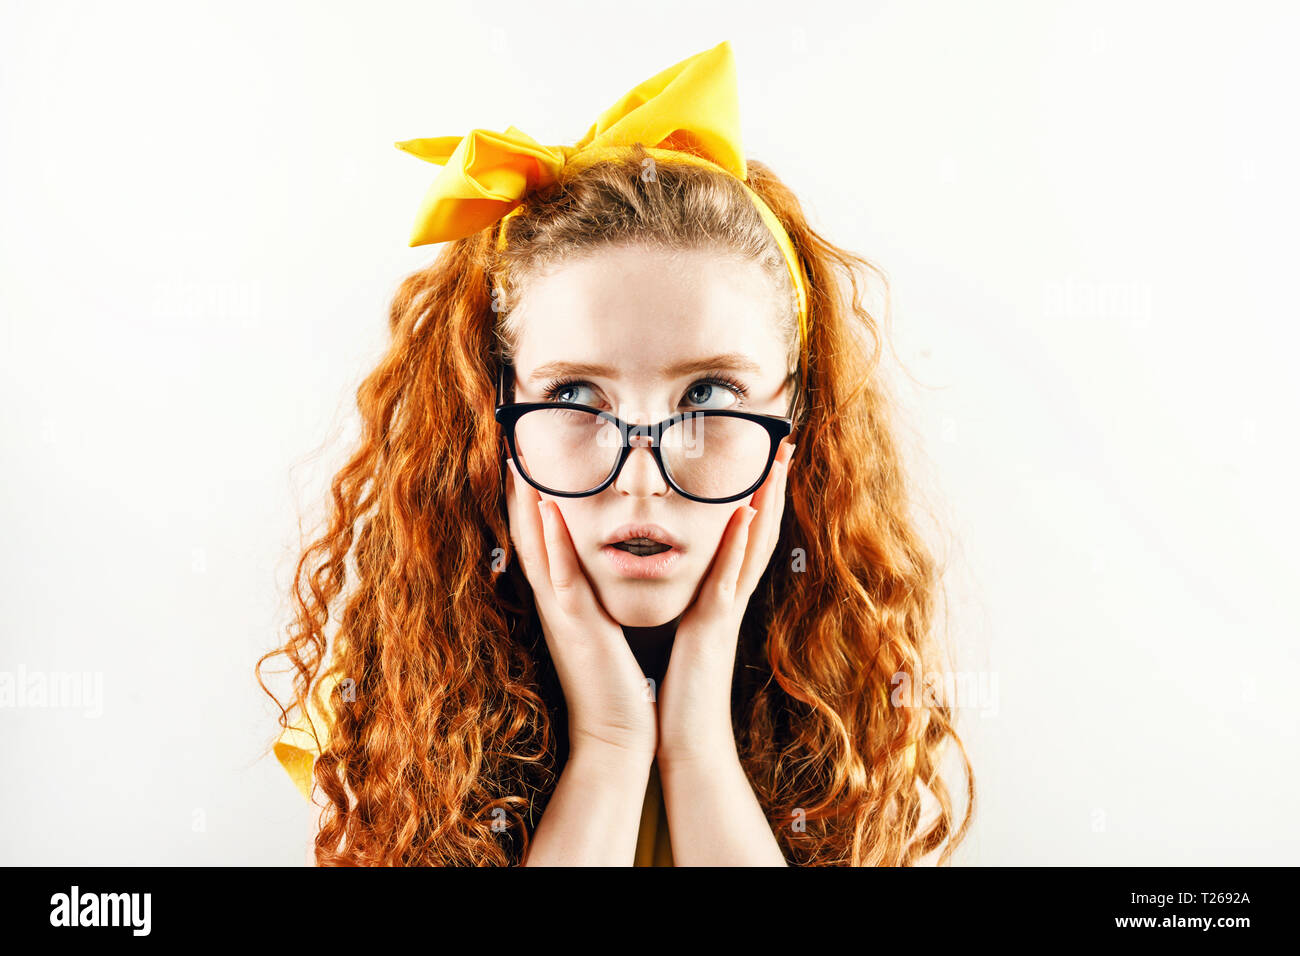 Schocked chica pelirroja rizada en los vasos con un arco amarillo sobre su cabeza vistiendo camiseta amarilla sosteniendo su hads cerca de su cara y apartar la mirada. Foto de stock